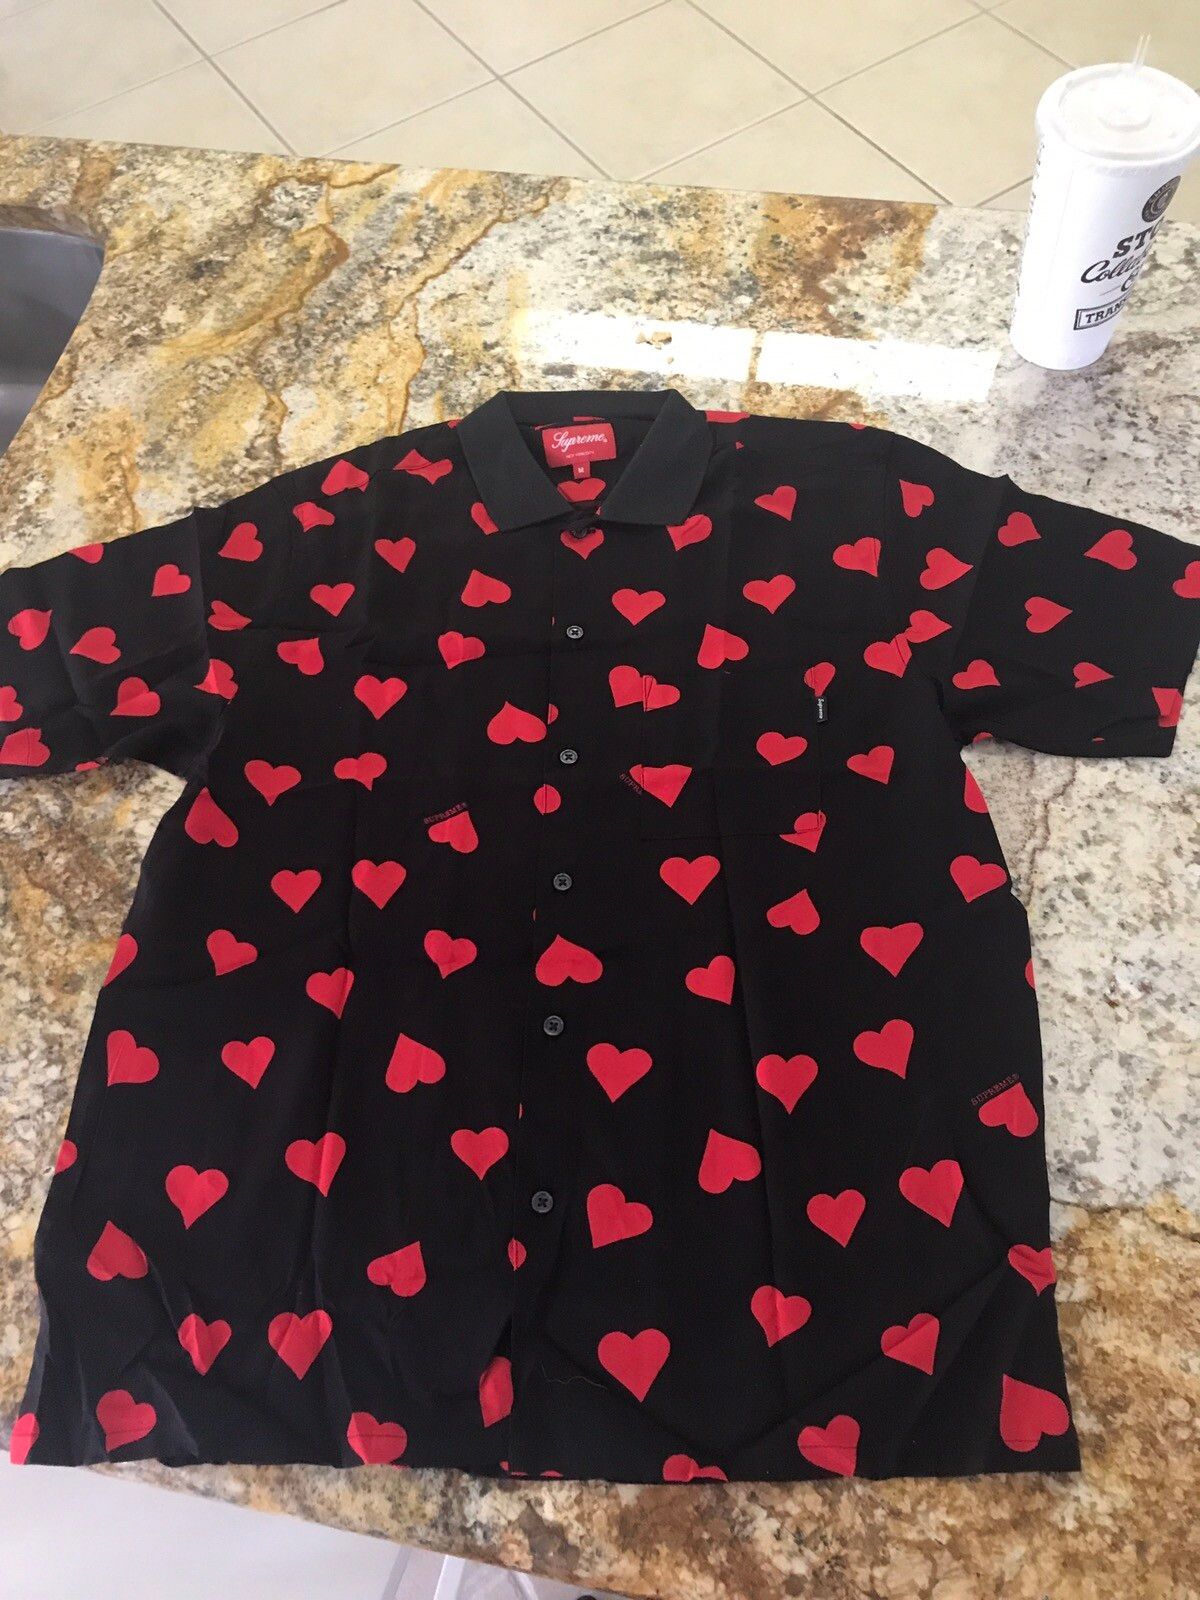 Supreme Supreme Hearts Rayon Shirt | Grailed